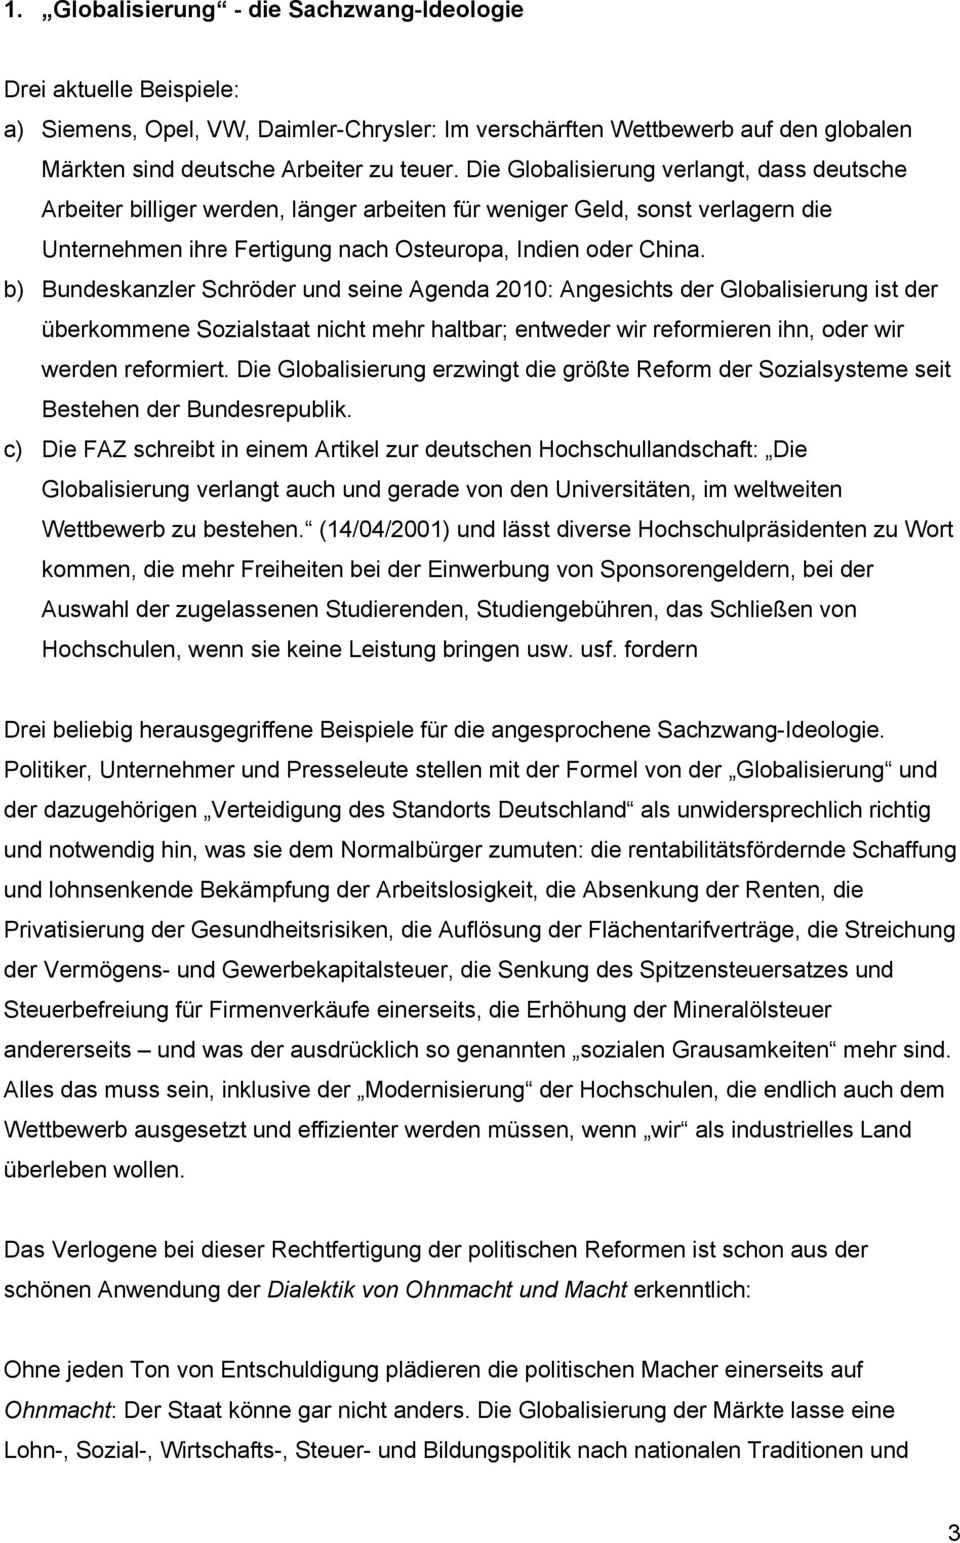 b) Bundeskanzler Schröder und seine Agenda 2010: Angesichts der Globalisierung ist der überkommene Sozialstaat nicht mehr haltbar; entweder wir reformieren ihn, oder wir werden reformiert.